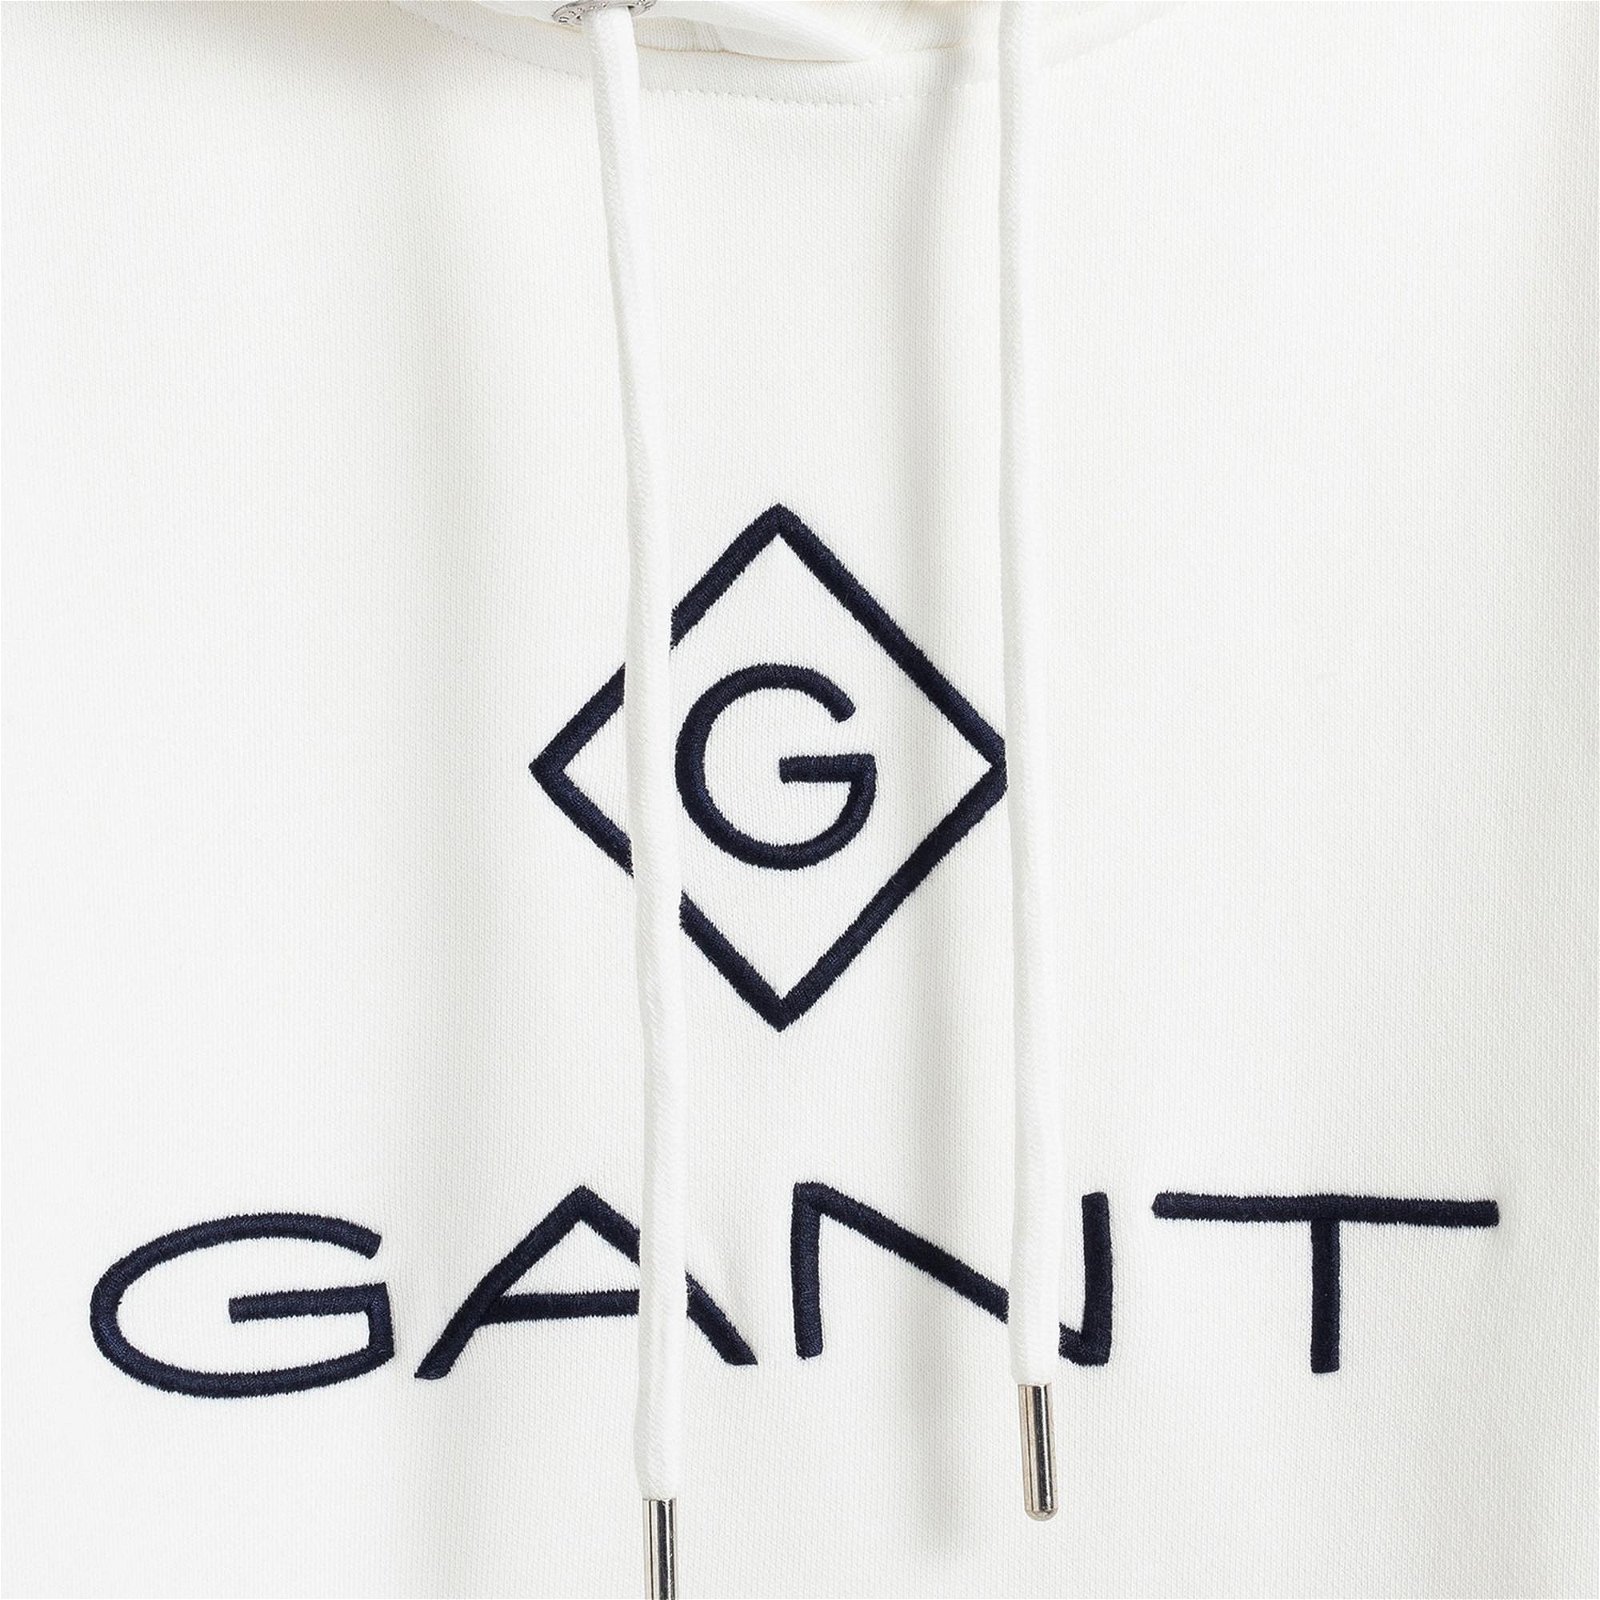 Gant Kadın Beyaz Sweatshirt